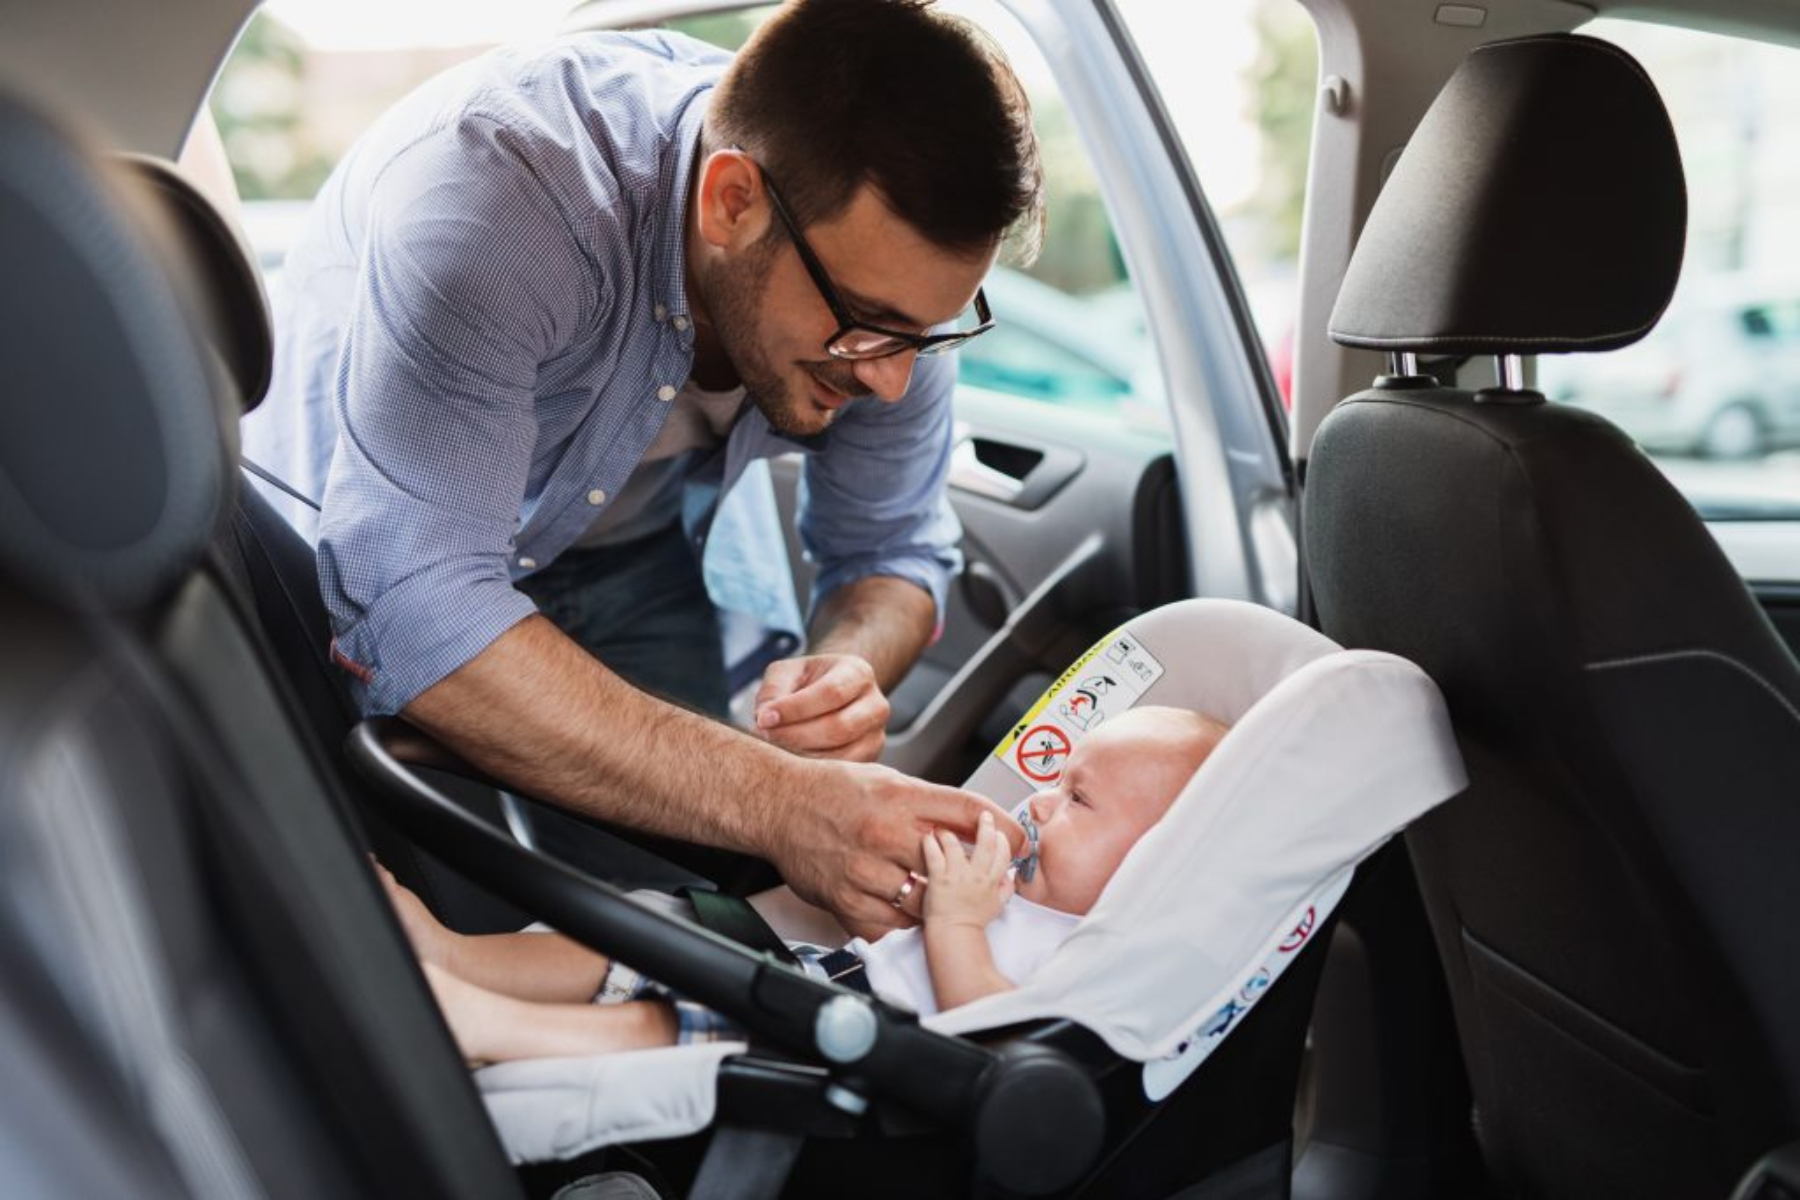 Παιδιά αυτοκίνητο: Γιατί πολλά παιδικά καθίσματα αυτοκινήτου δεν θεωρούνται ασφαλή;